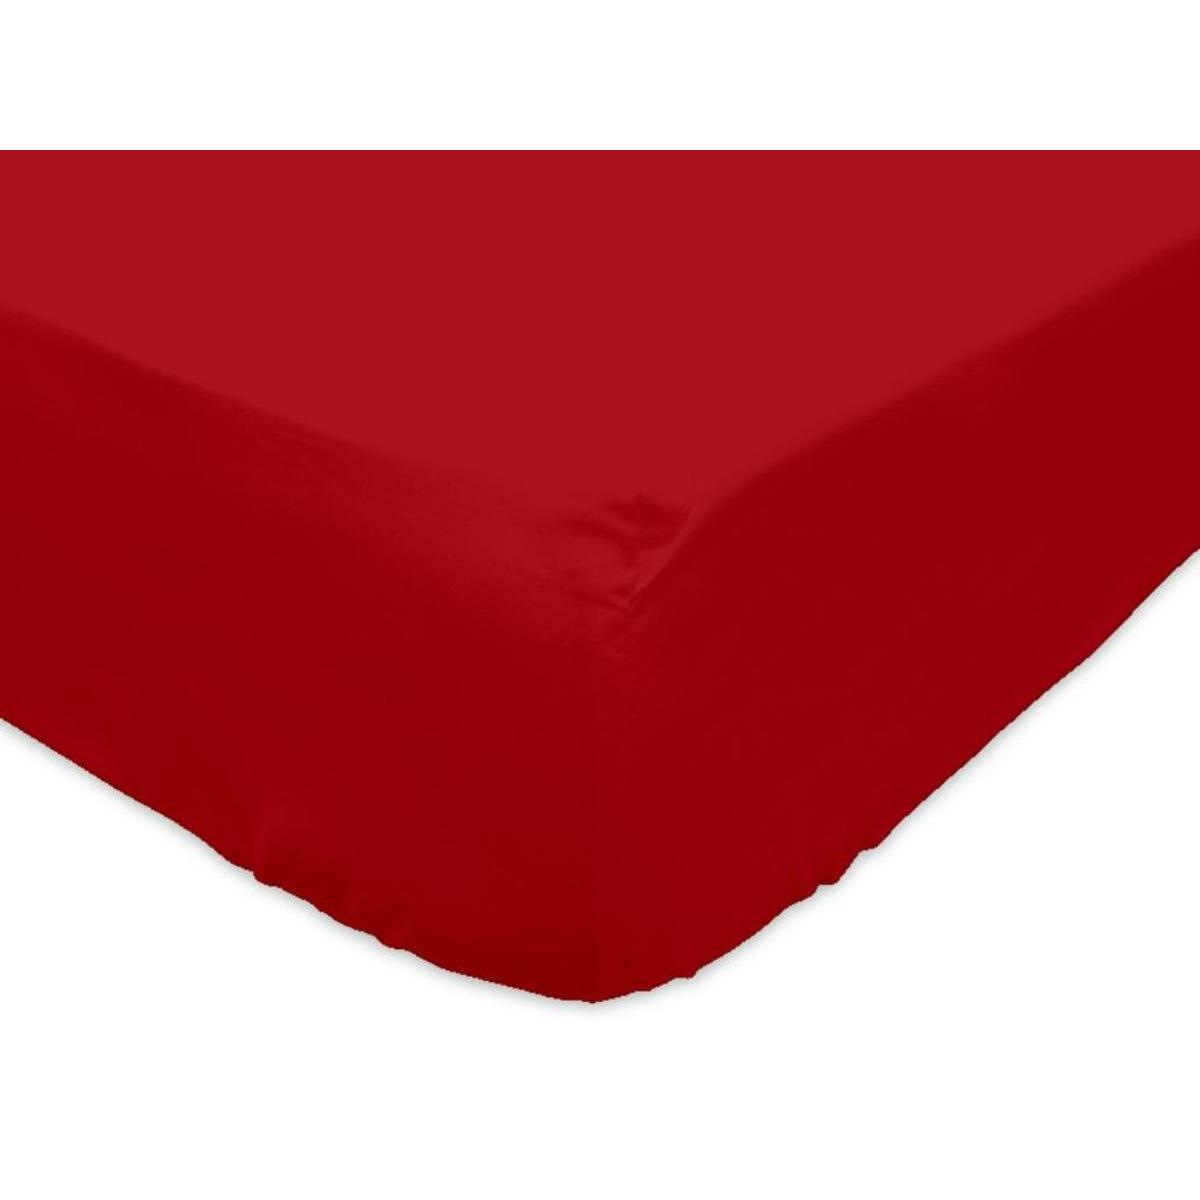 Drap-housse jersey - 190 x 140 cm - en coton uni rouge